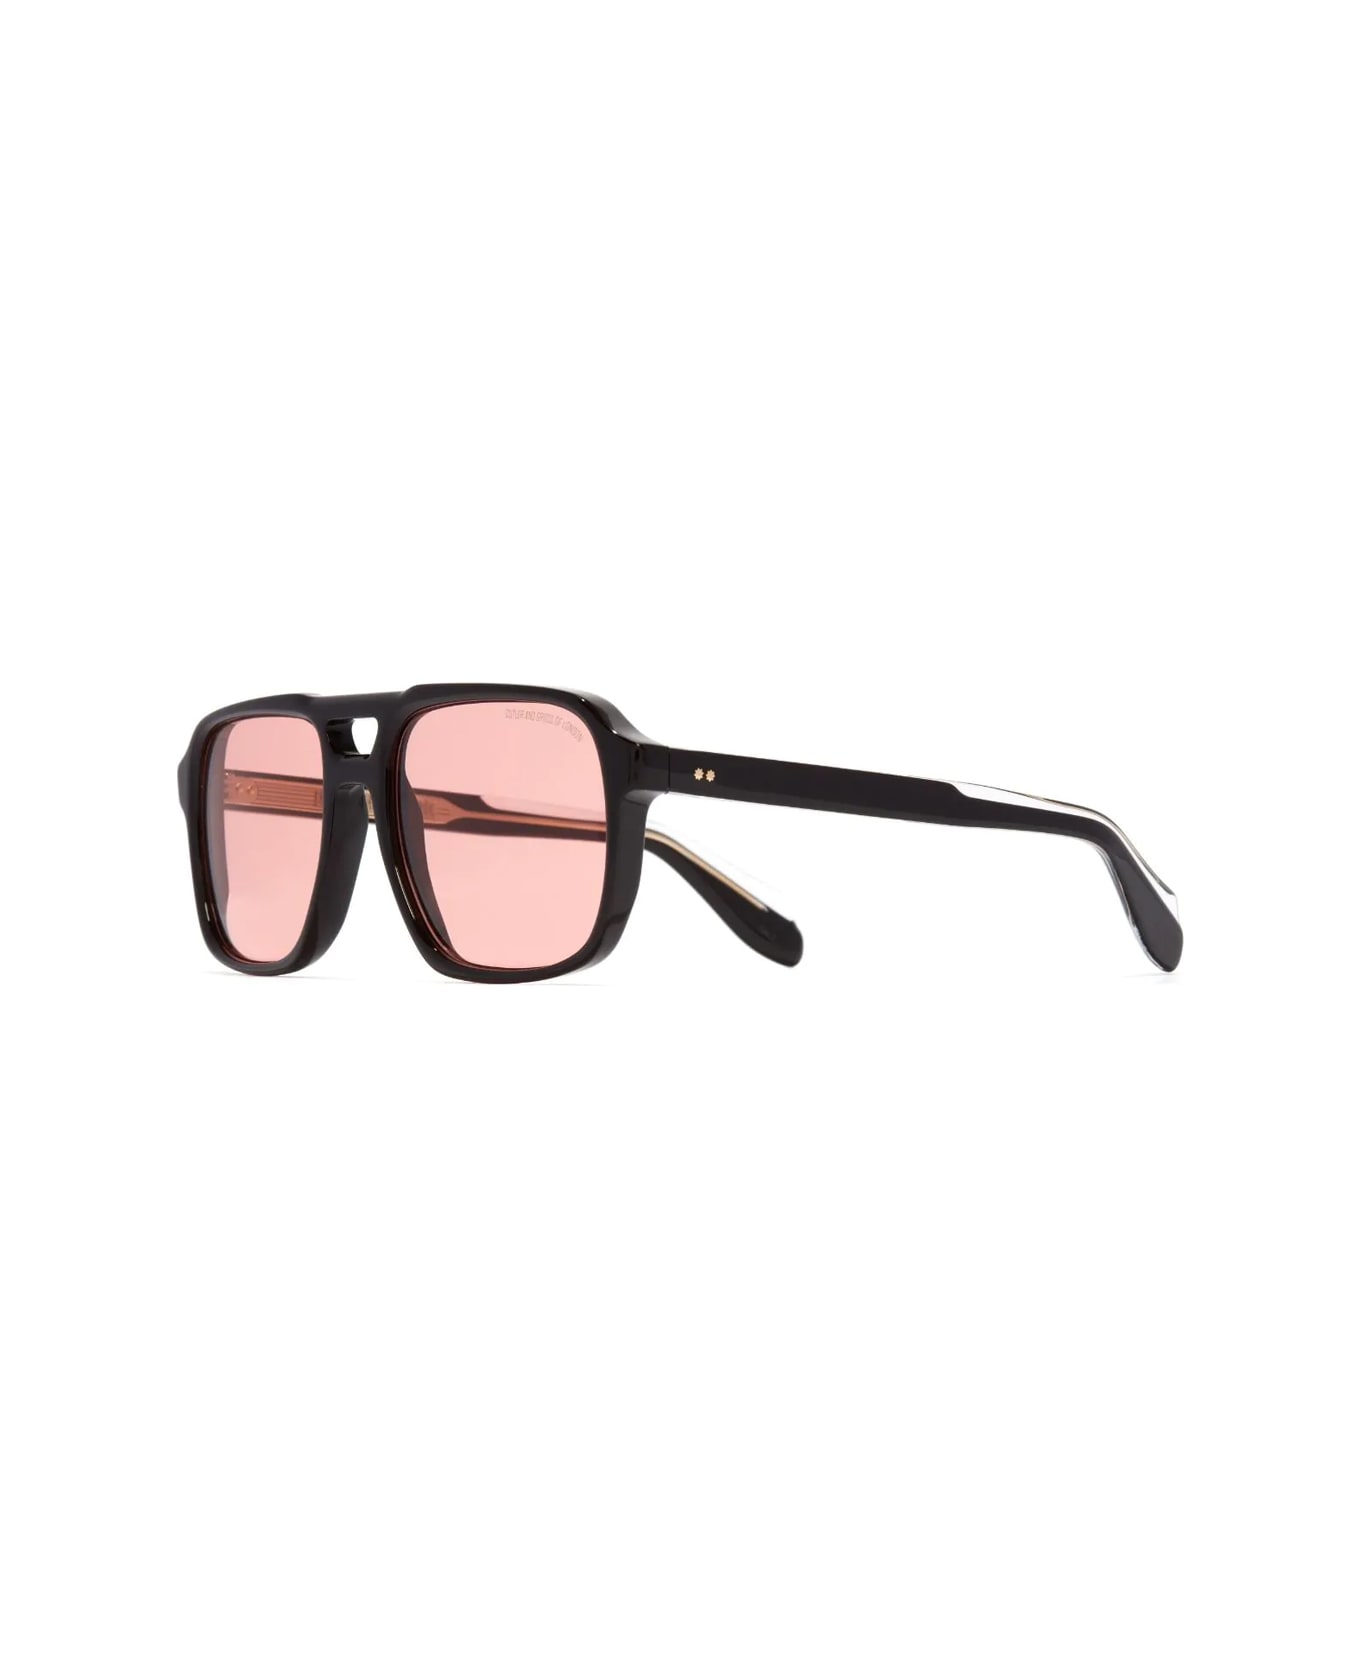 Cutler and Gross 1394 06 Sunglasses - Nero サングラス